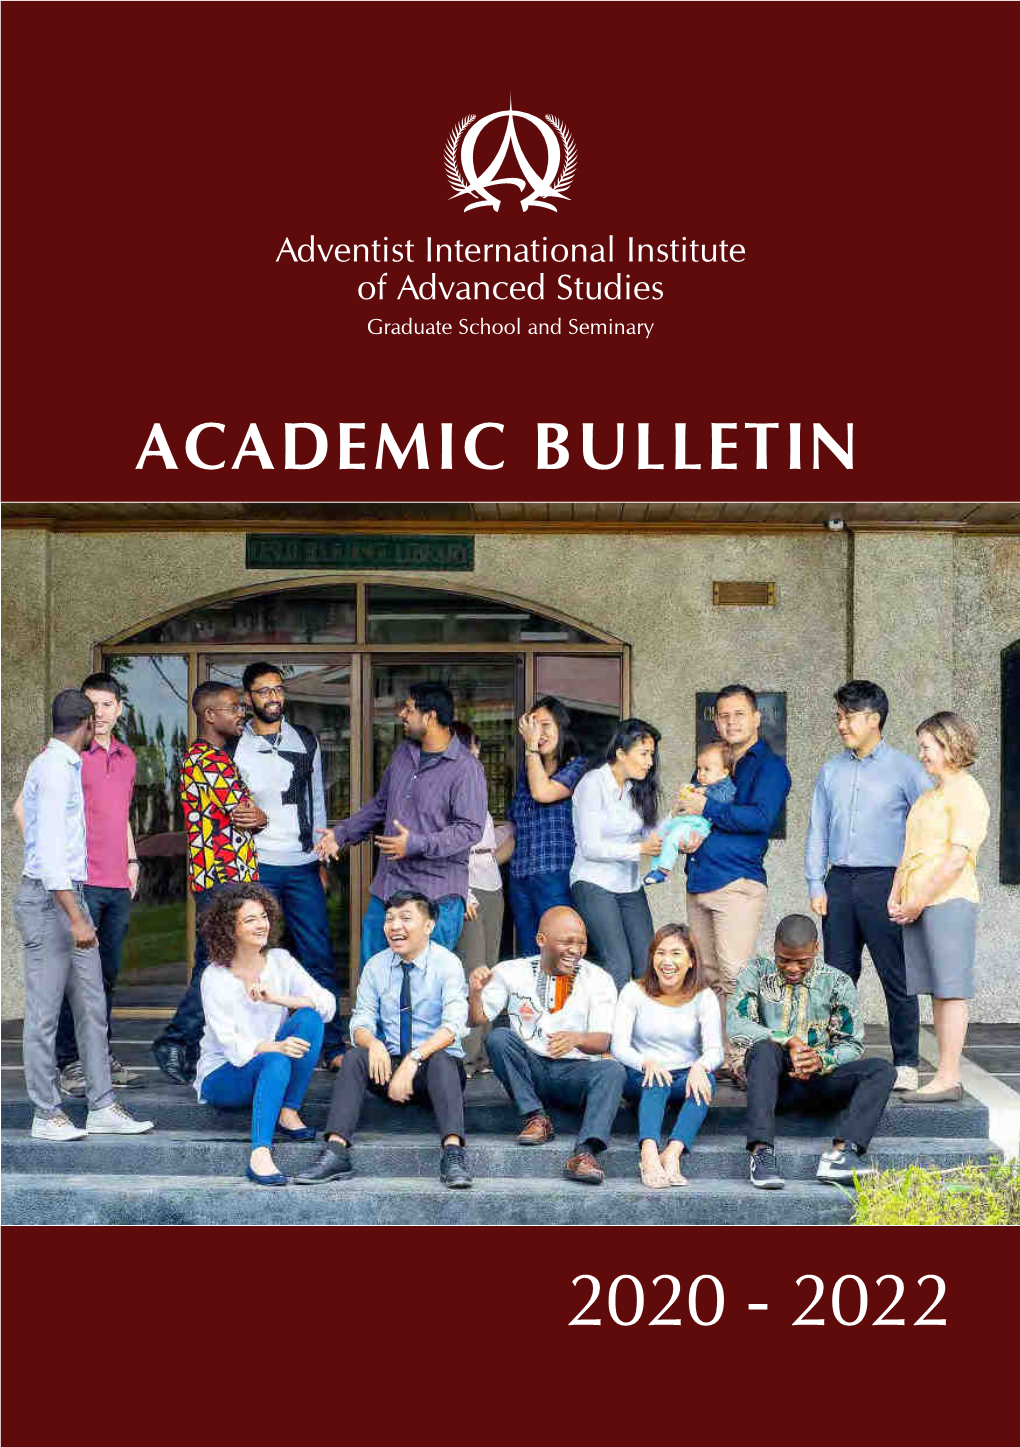 Academic Bulletin 2020-2022